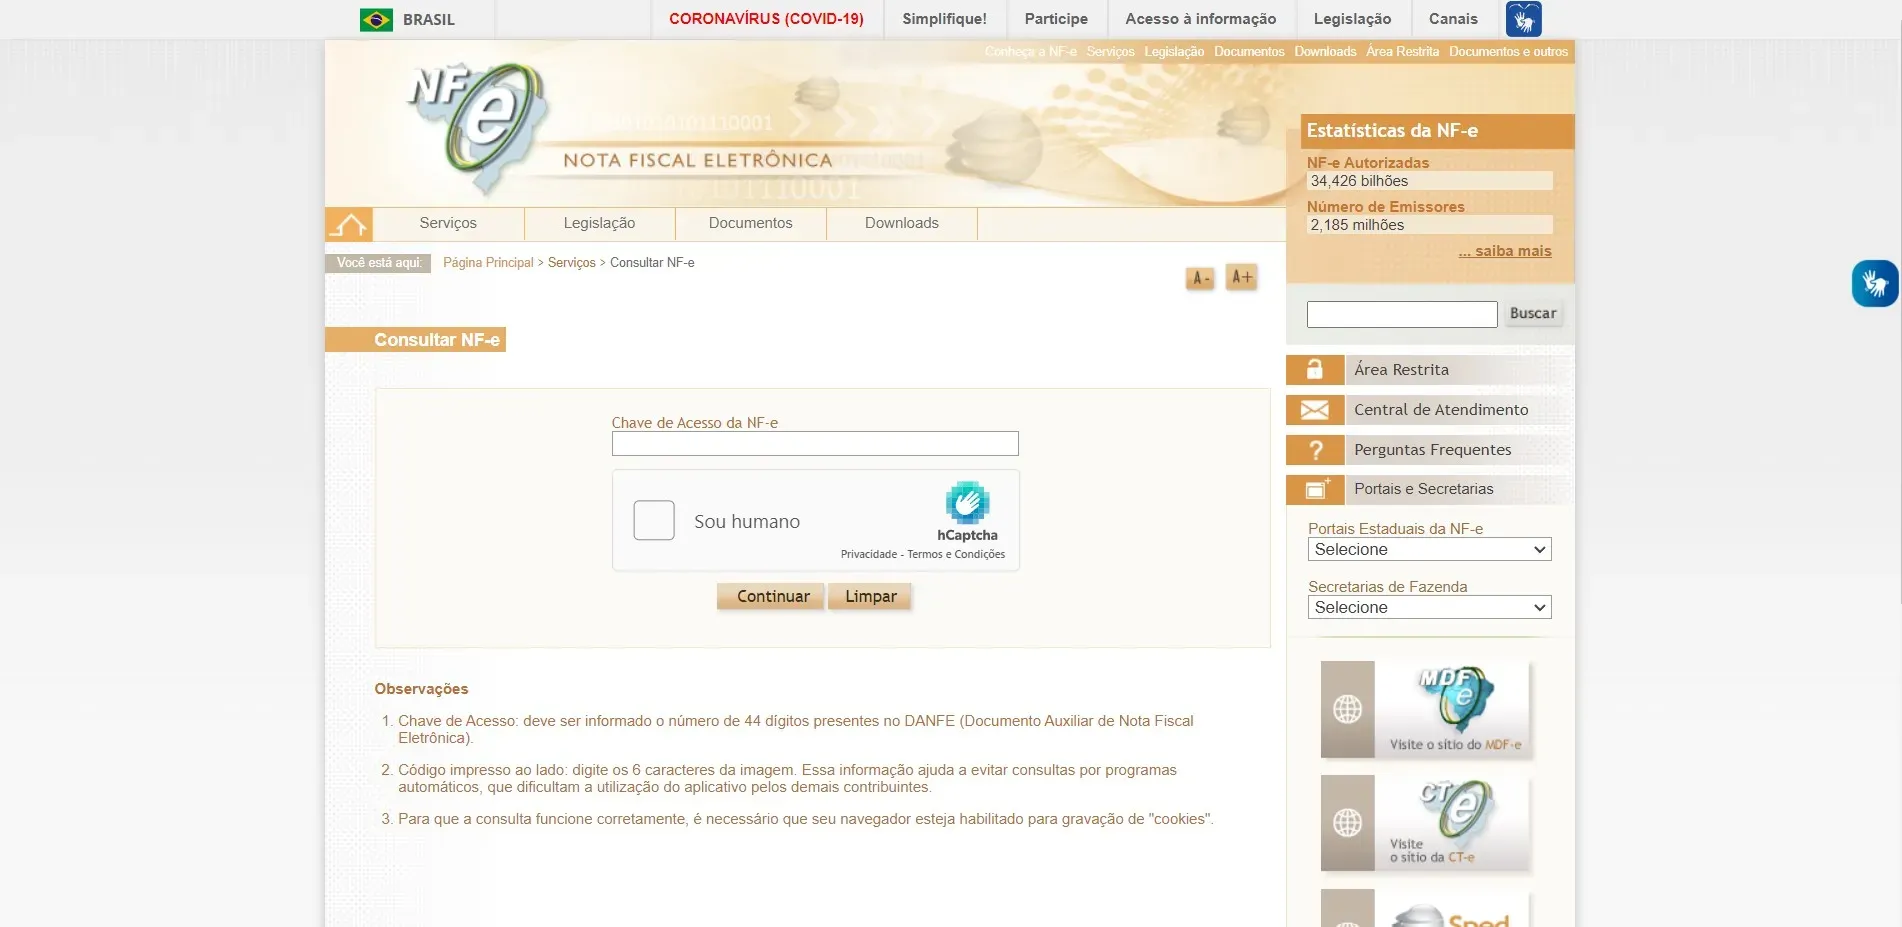 Portal da Nota Fiscal eletrônica, onde pode ser gerado o DANFE